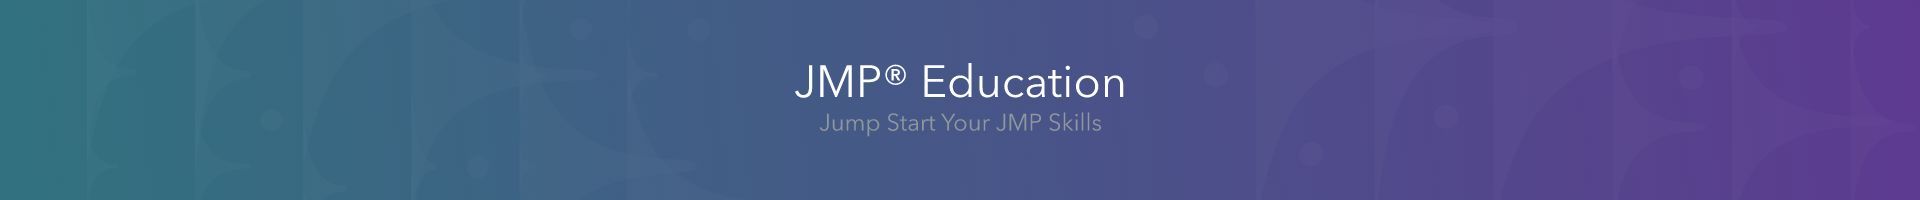 jmp-education-community-banner.jpg